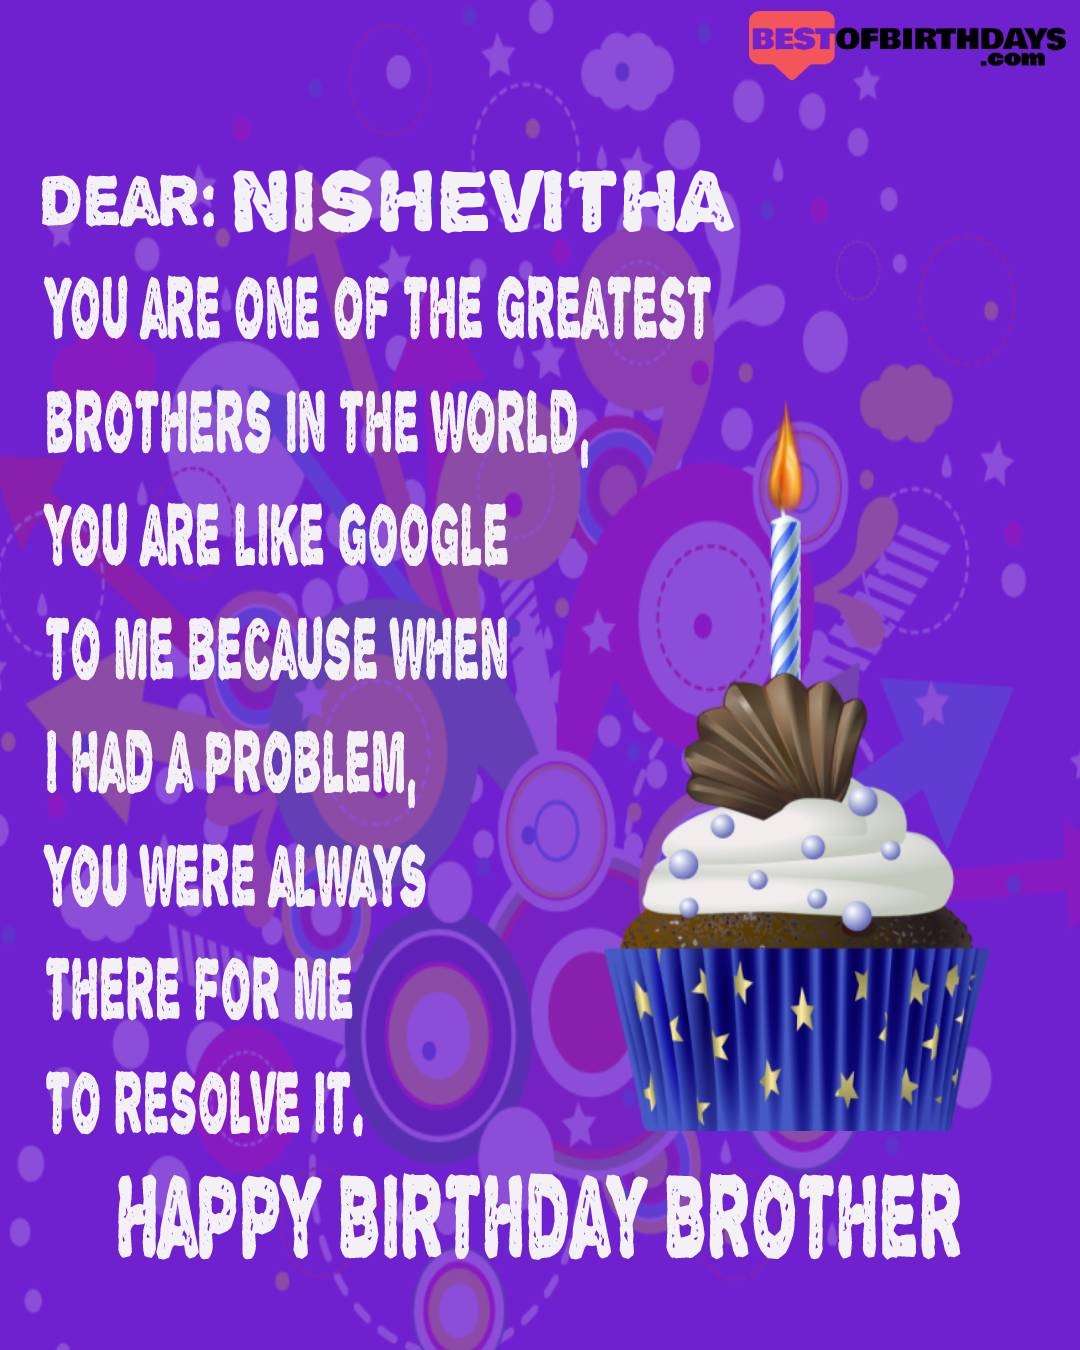 Happy birthday nishevitha bhai brother bro